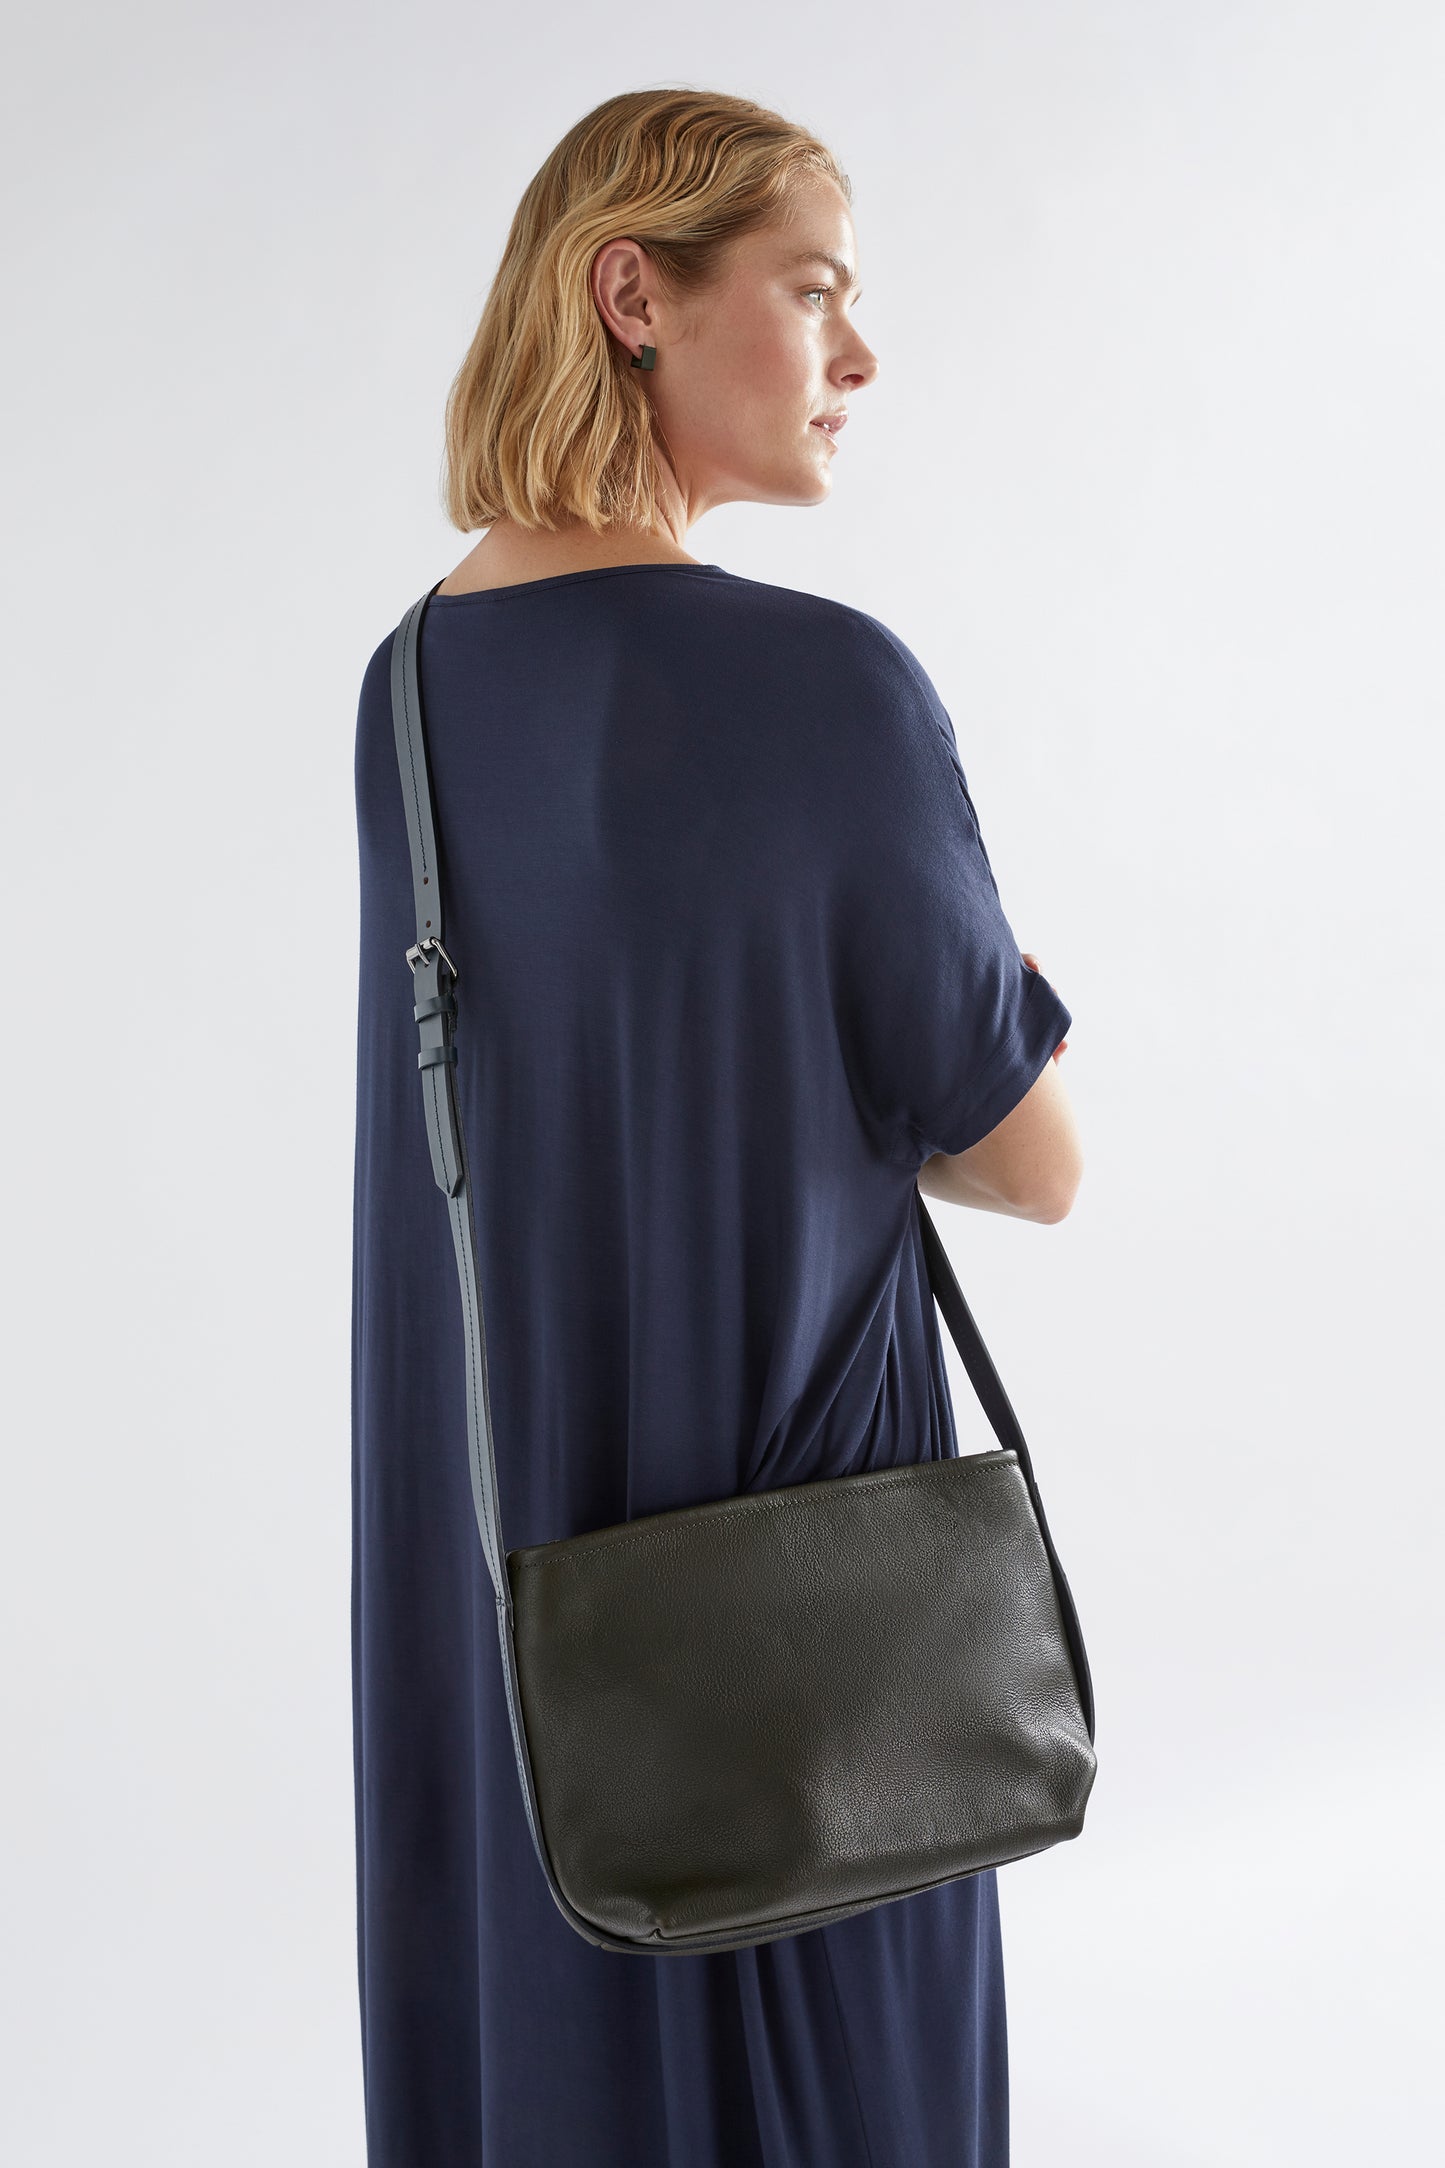 Canutte Leather Bag Front model 2 | GREEN TEA / NAVY